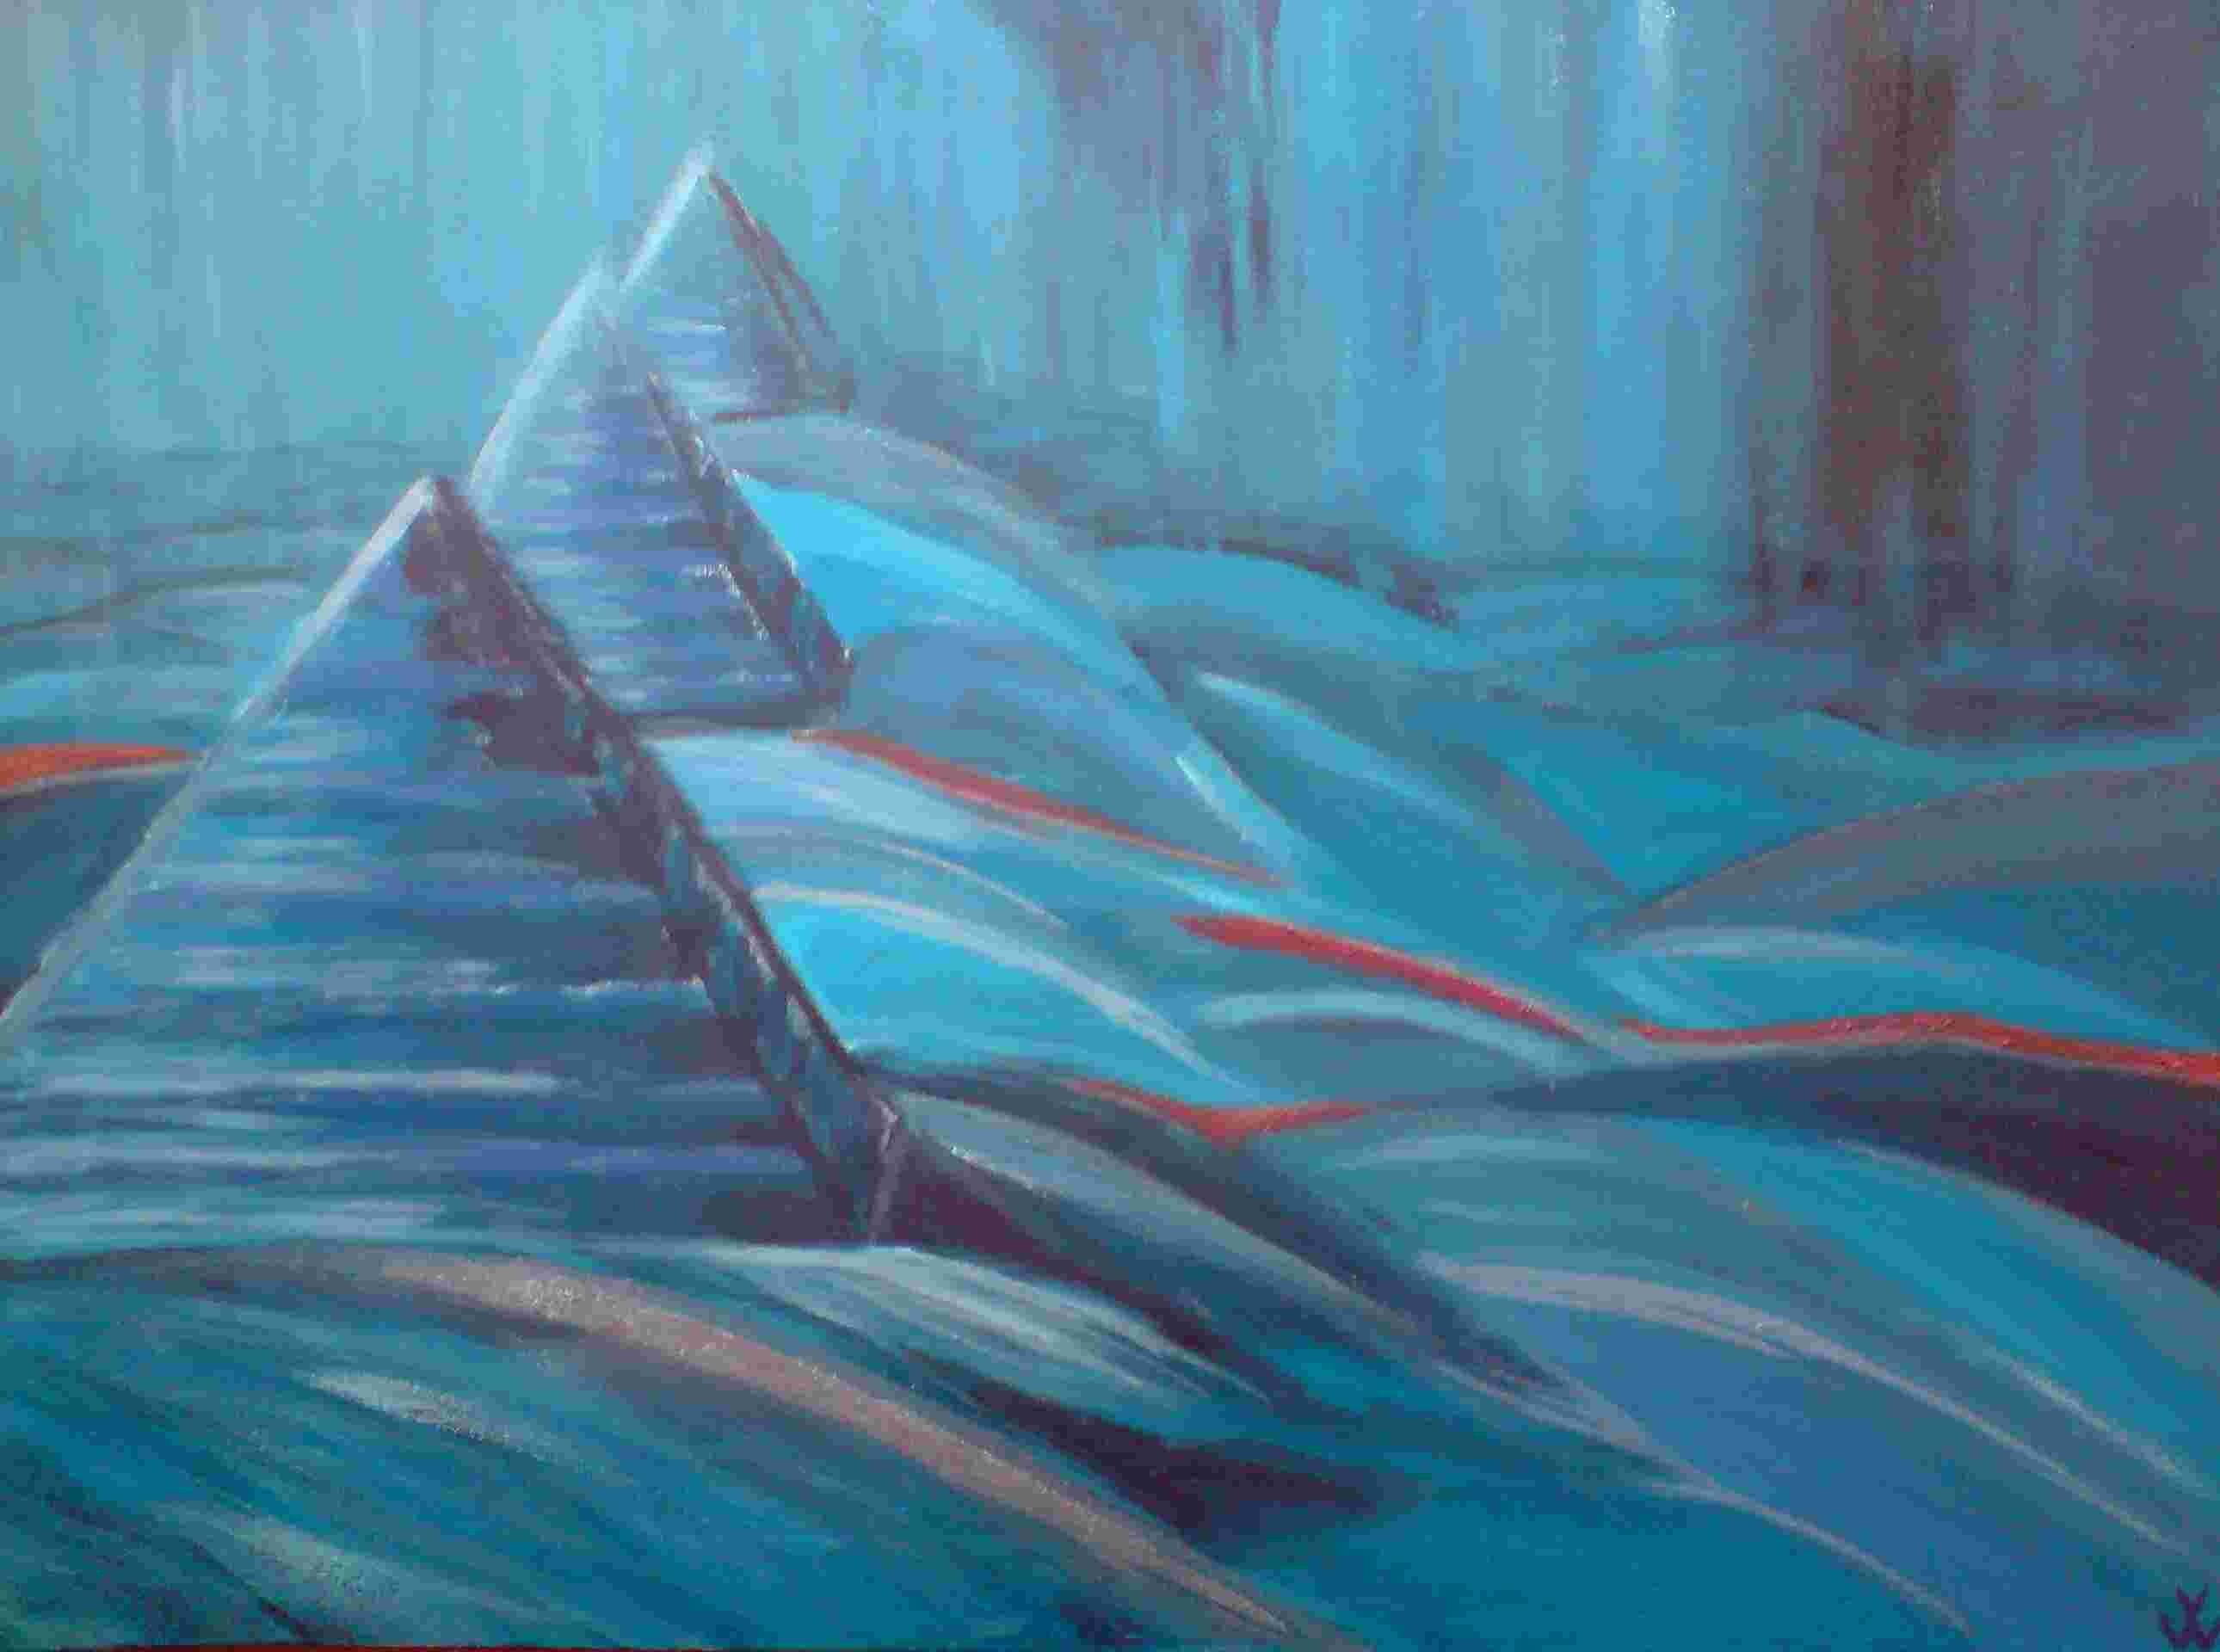 Hier sollte das Bild "Die 3 blauen Pyramiden" von Verena Wilhelm als Bild angezeigt werden.